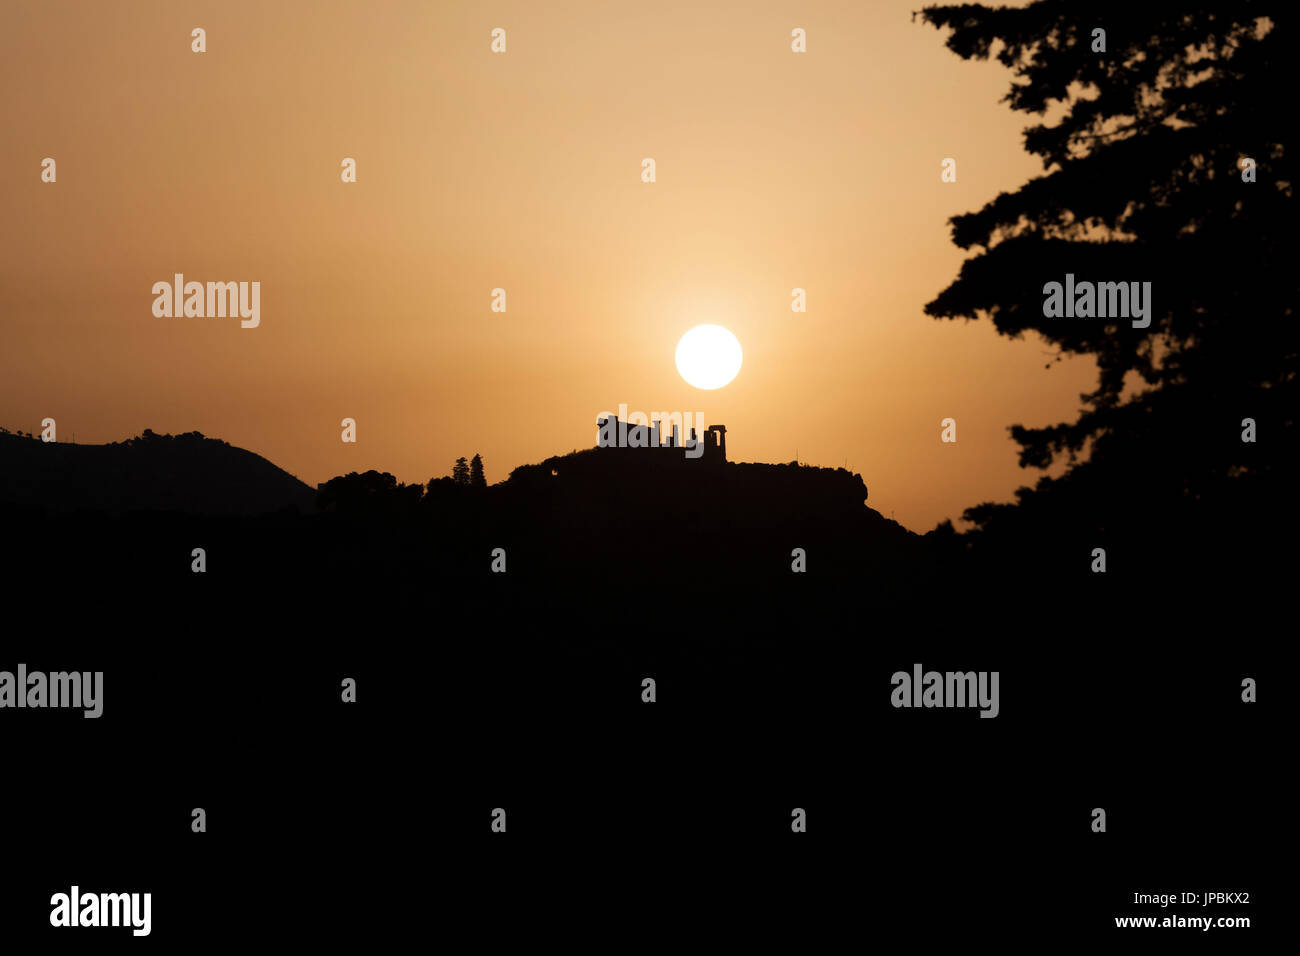 Sonnenuntergang Bilder der Tempel der Juno ein griechischer Tempel der antiken Stadt Akragas Valle dei Templi Agrigento Sizilien Italien Europa Stockfoto